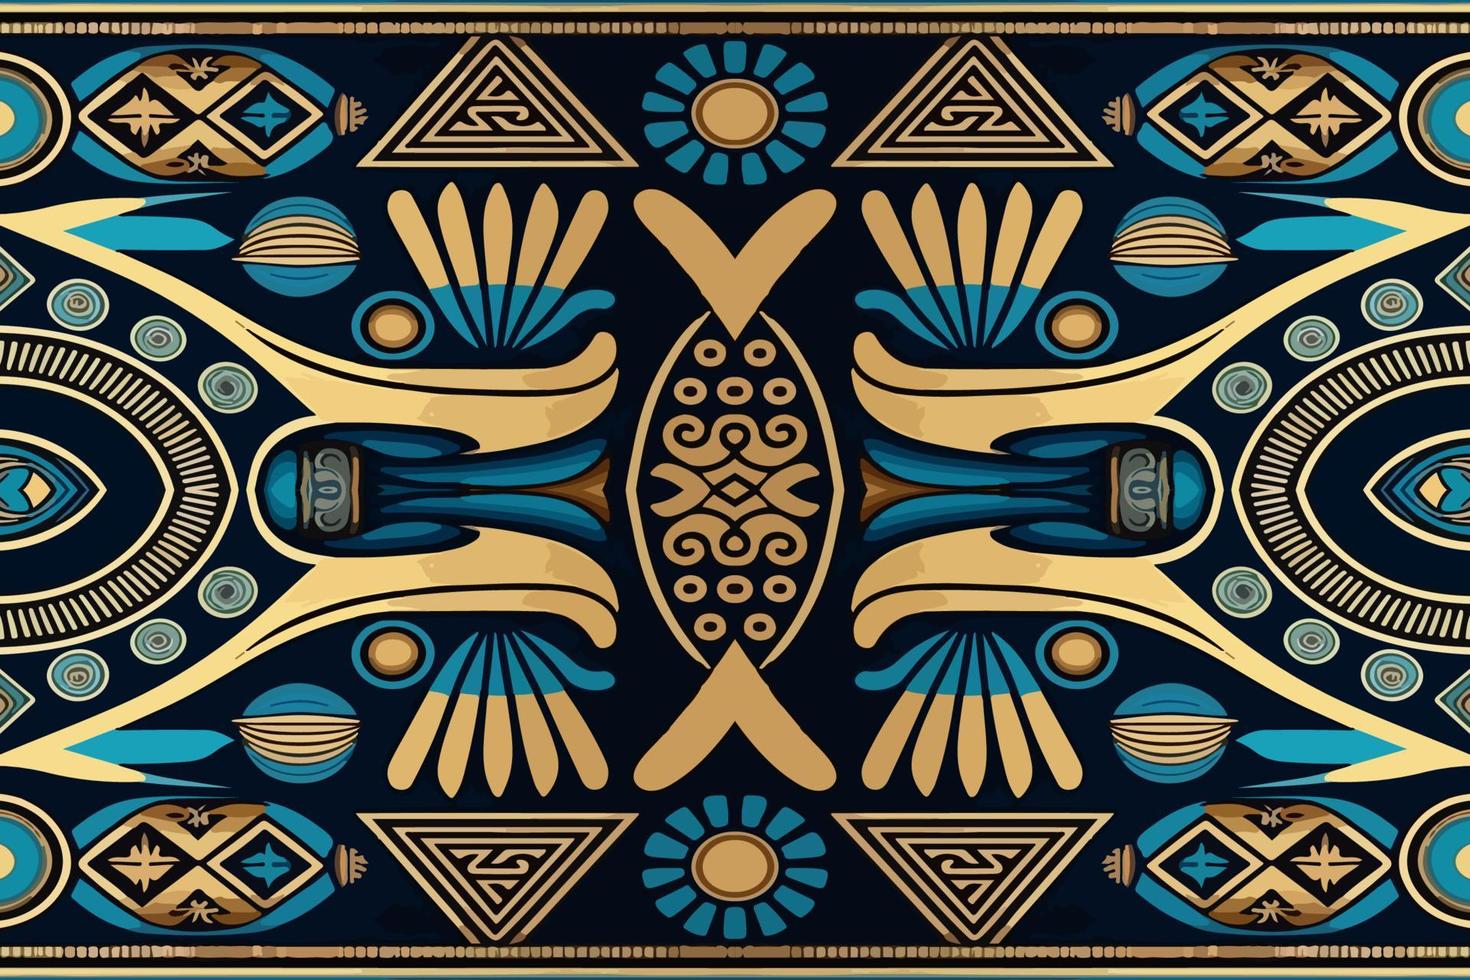 Egyptische geometrie patroon oud oude achtergrond. abstract traditioneel volk antiek tribal etnisch grafisch lijn. overladen elegant luxe wijnoogst retro stijl. structuur textiel kleding stof etnisch Egypte patronen vector